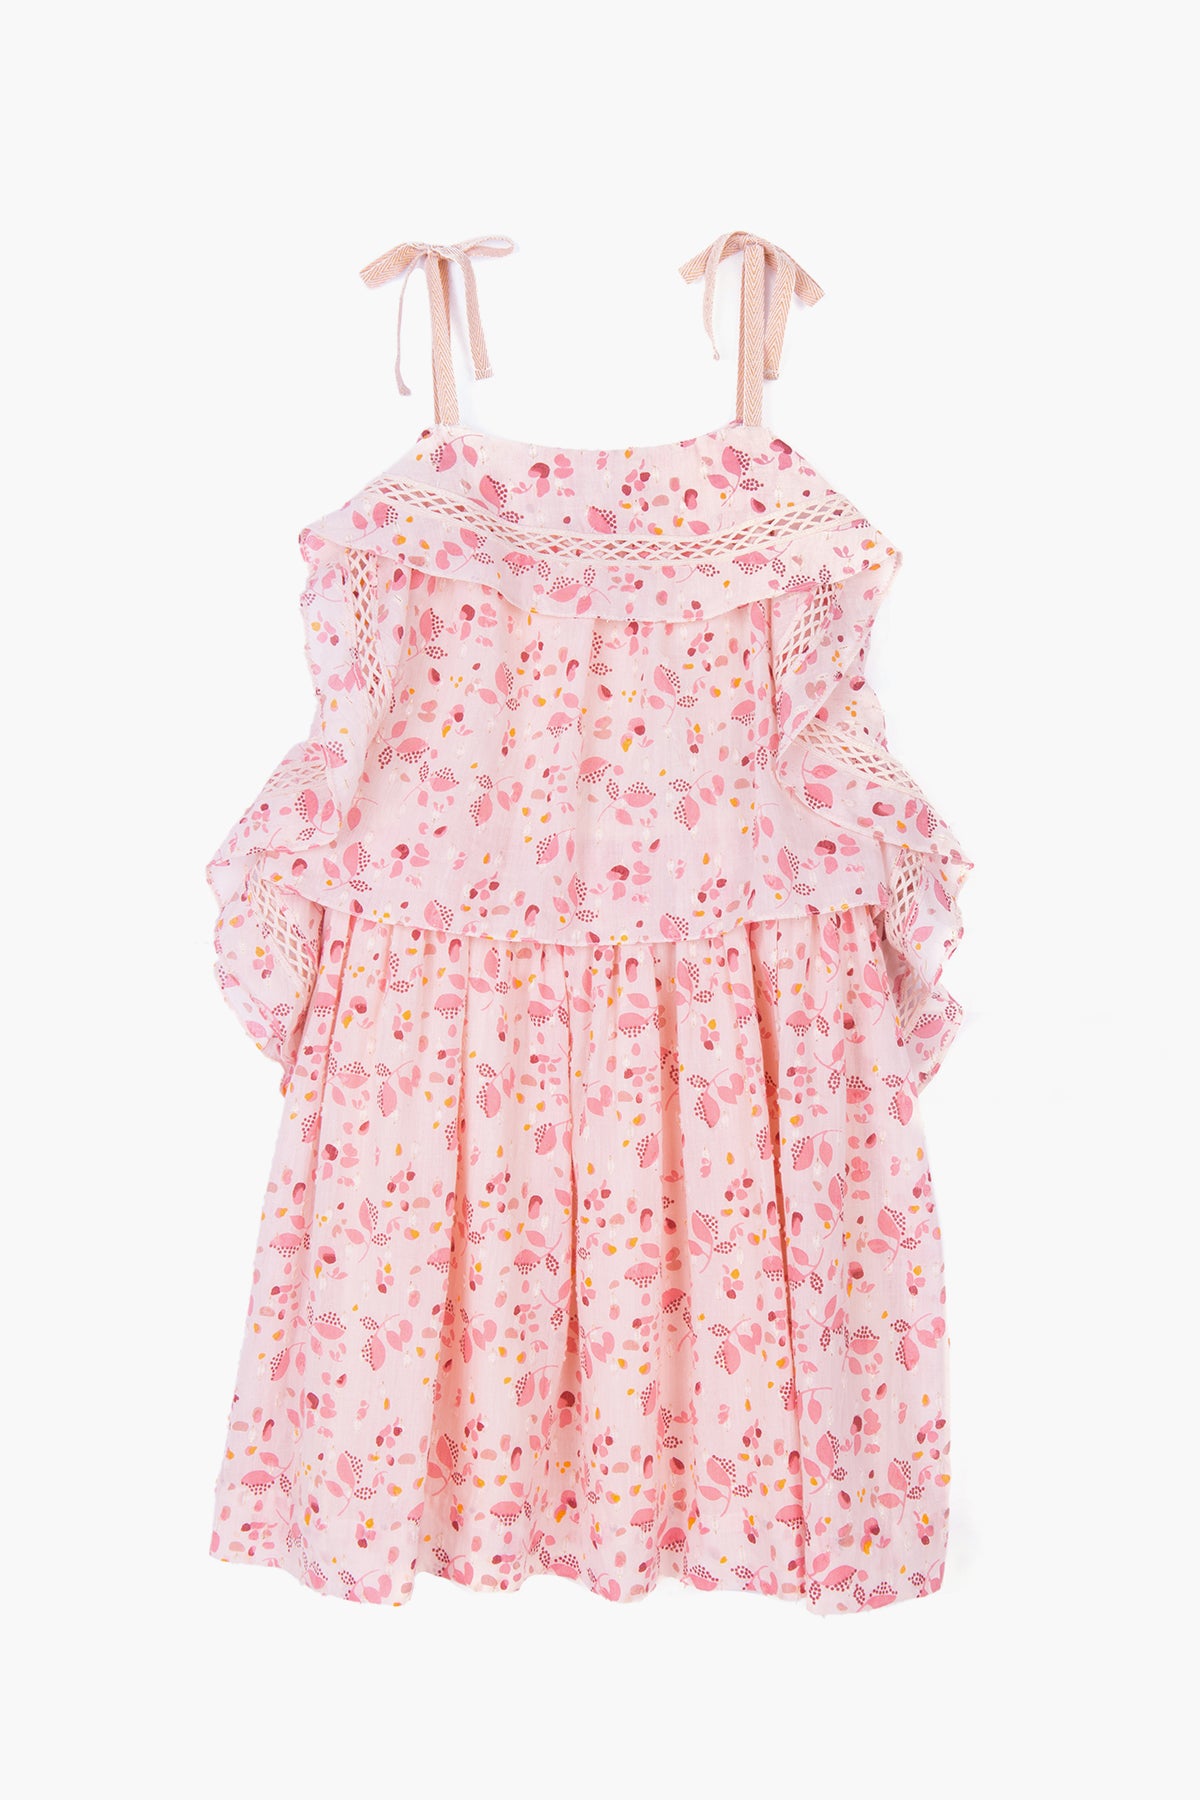 Velveteen Lois Girls Dress - Pink Floral (Size 10 left) – Mini Ruby